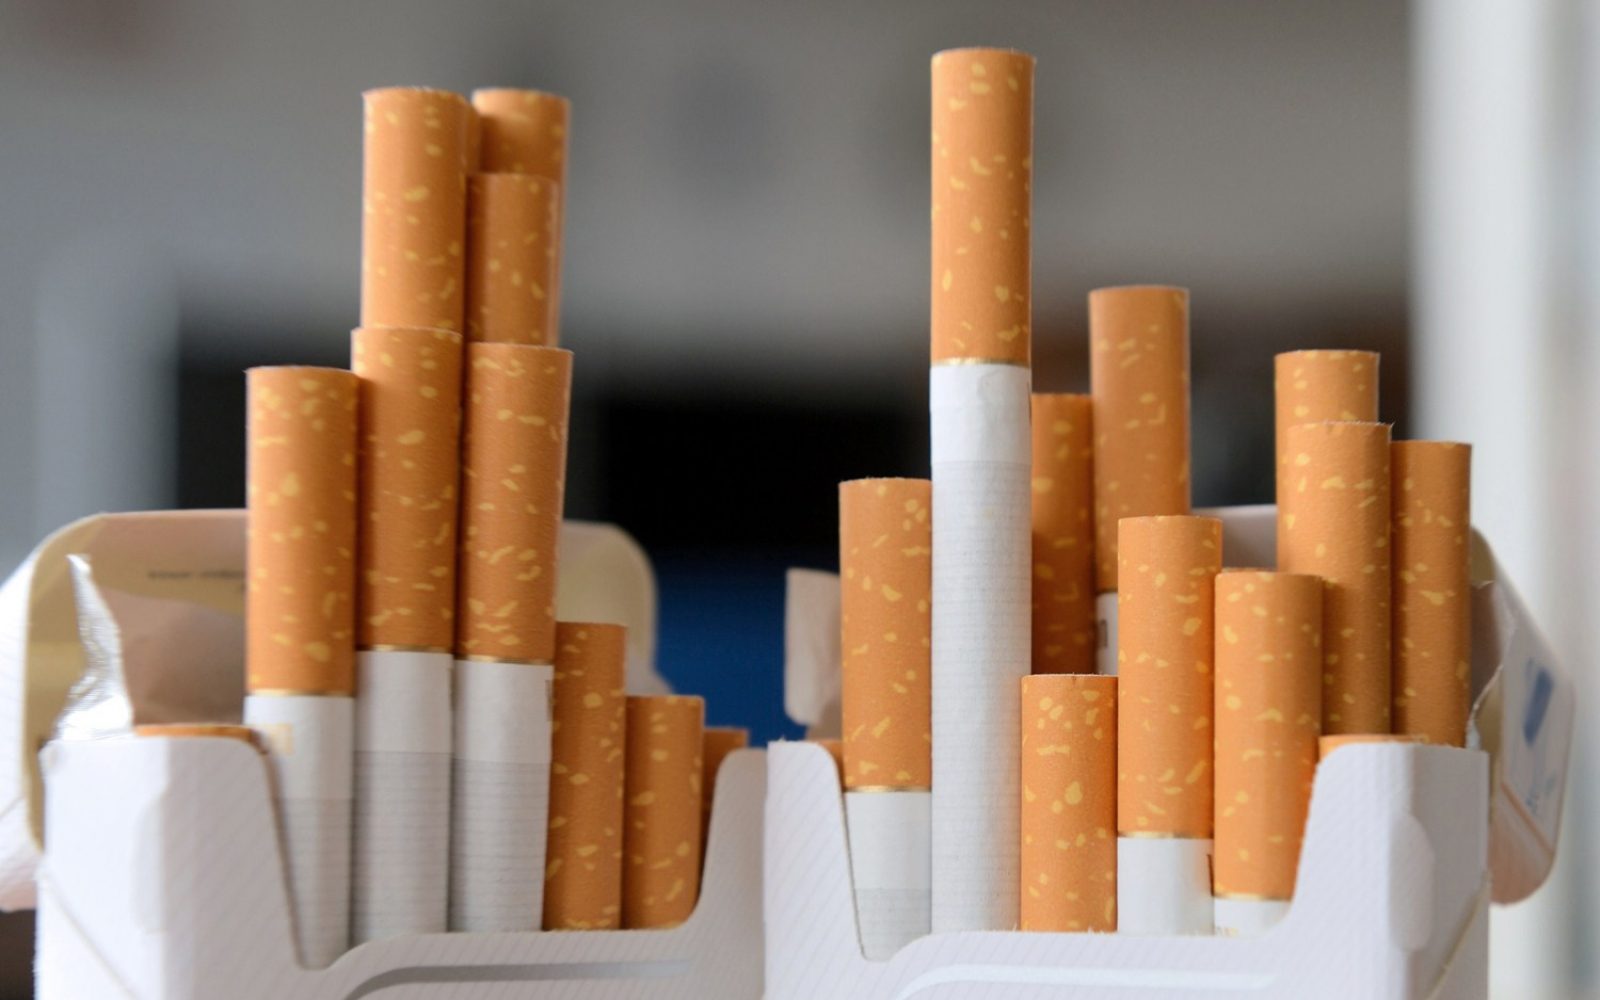 6 شركات رفعت أسعار السجائر بقيمة تتراوح بين 8 و10 جنيهات